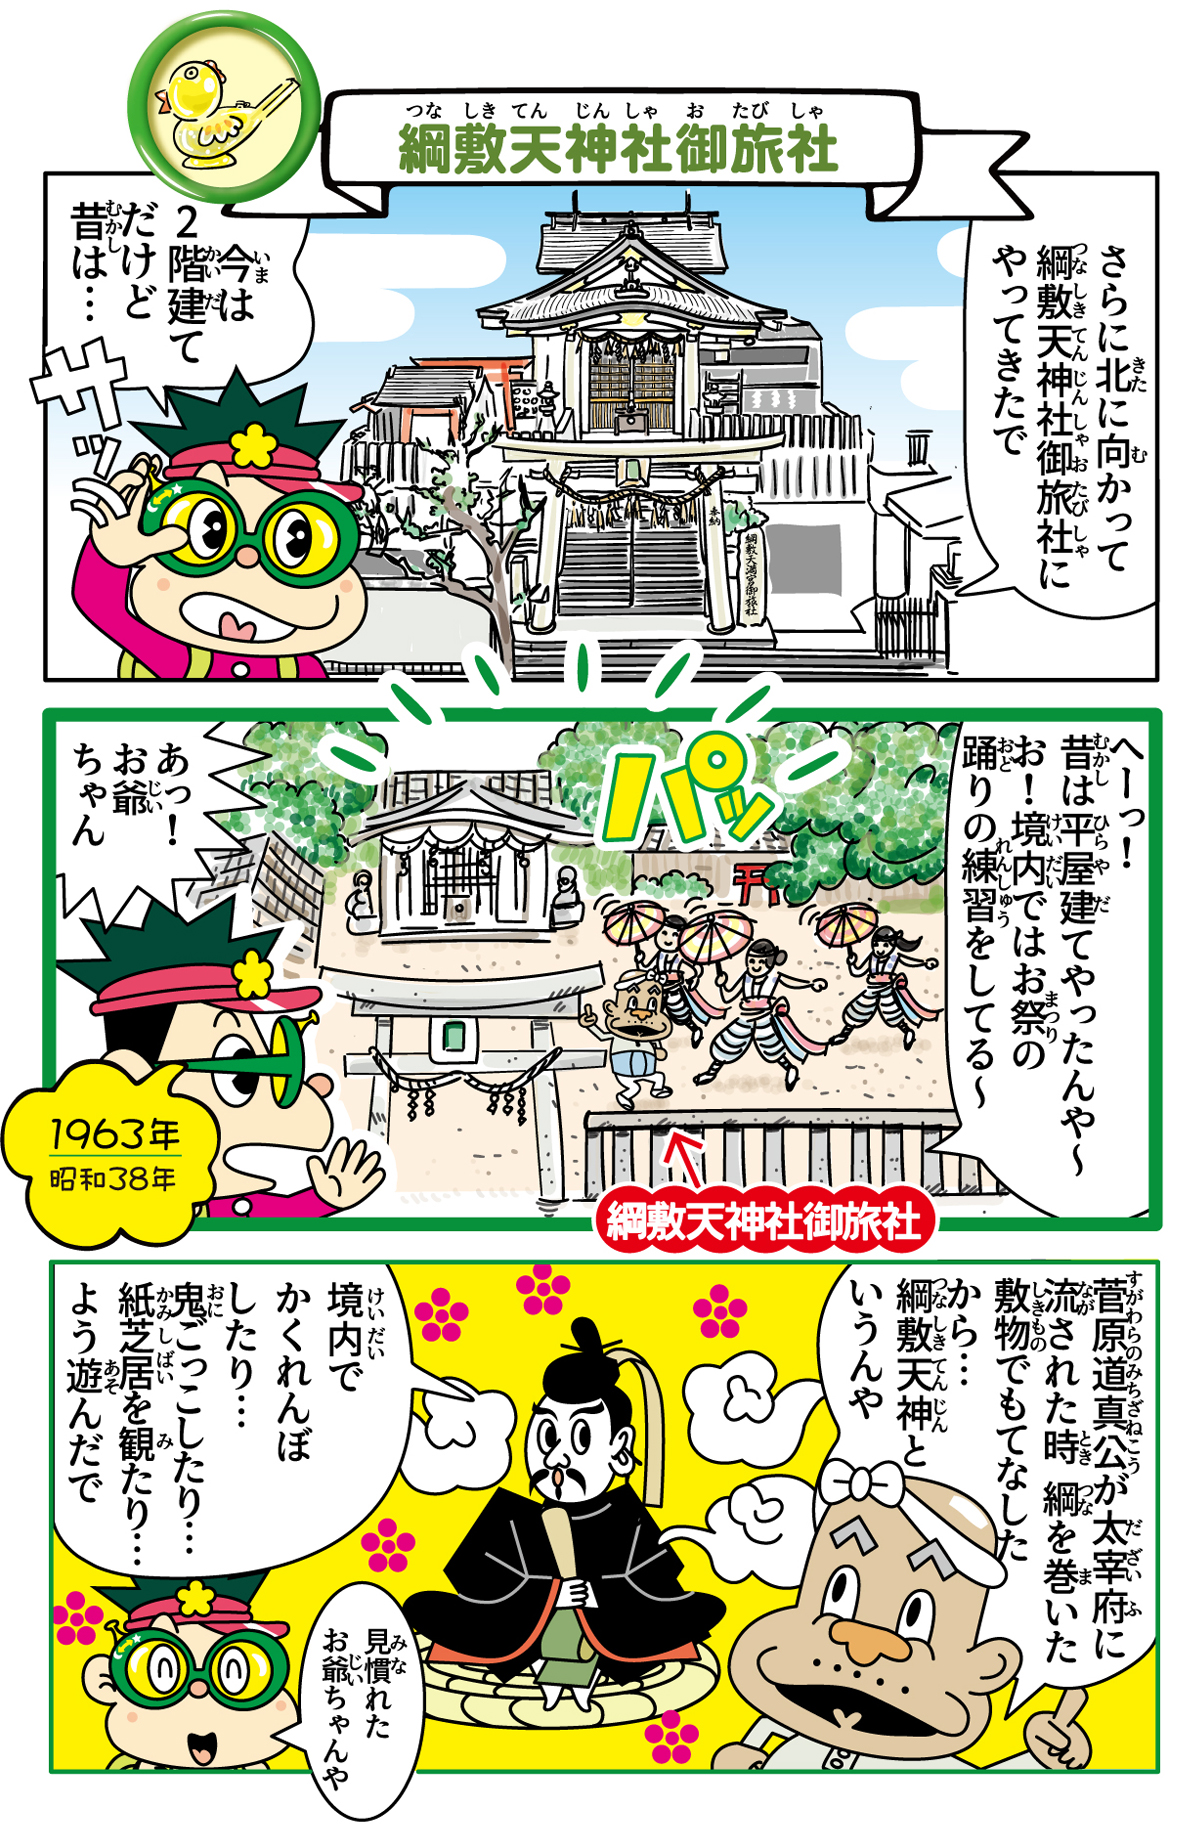 綱敷天神社御旅社の歴史漫画 1